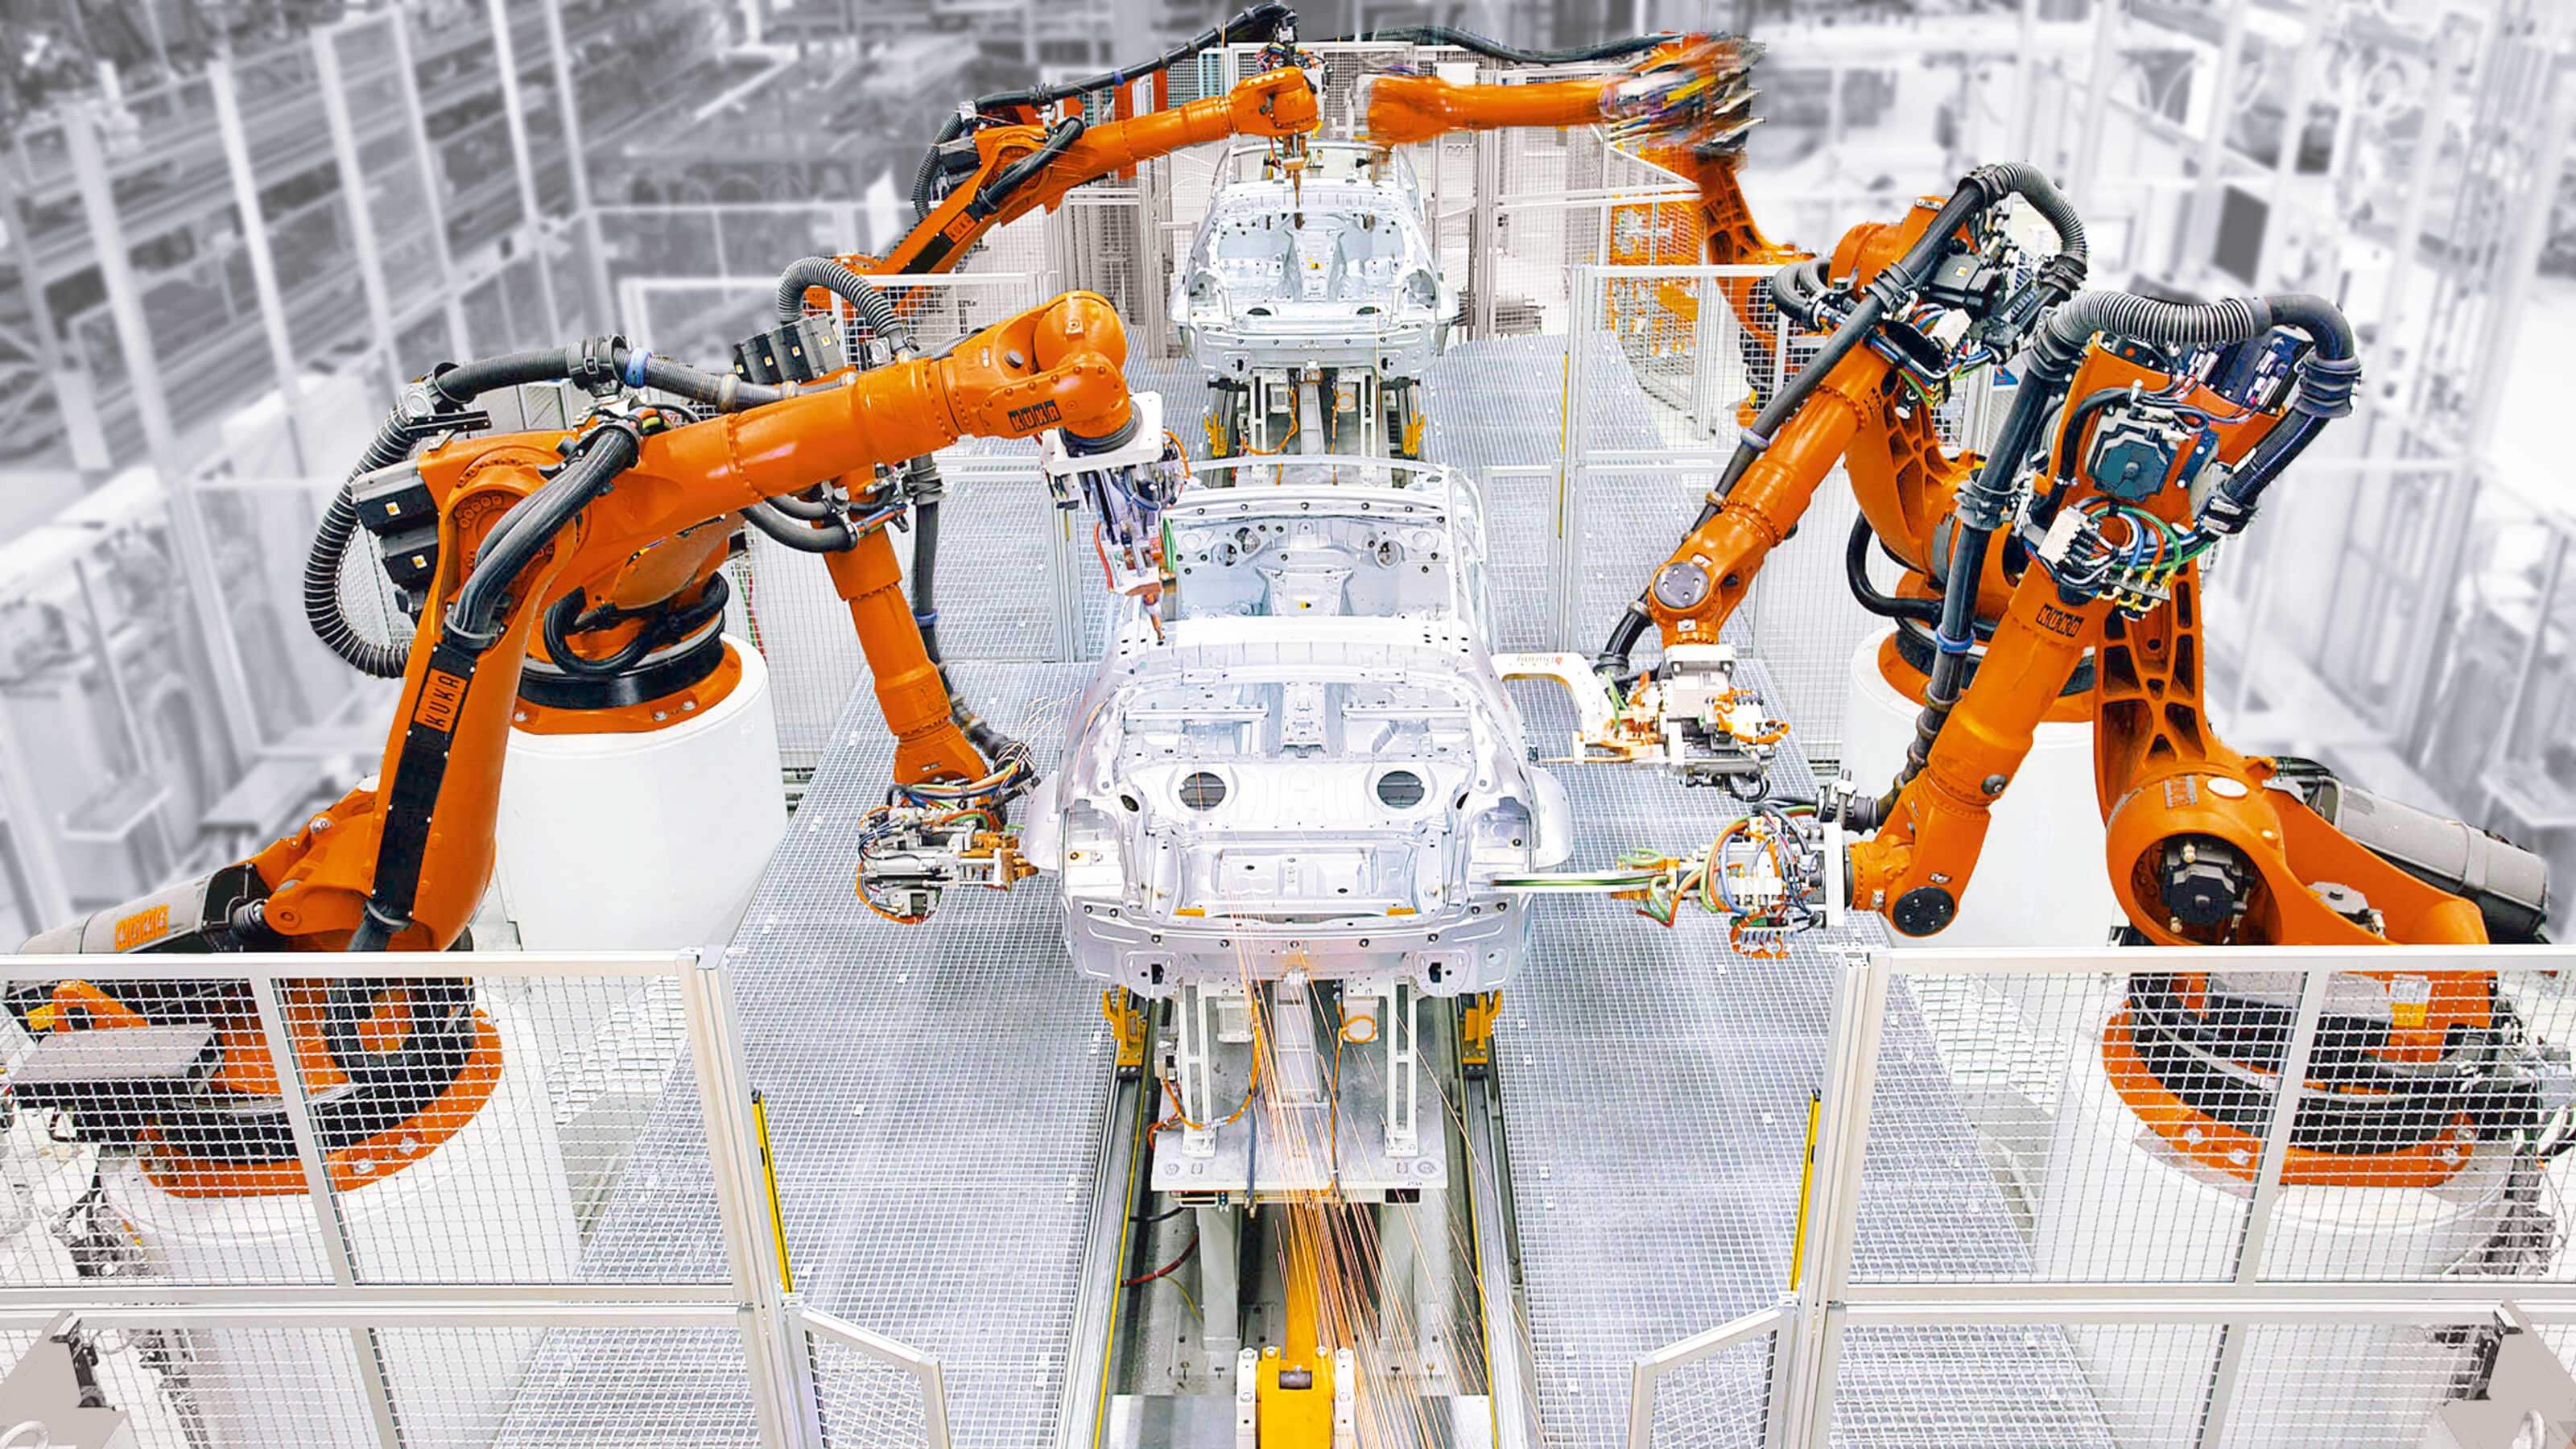 Механизмы помогающие людям. Kuka промышленные роботы Тесла. Kuka Германия Дельта робот. Робототехника в промышленности. Искусственный интеллект в промышленности.